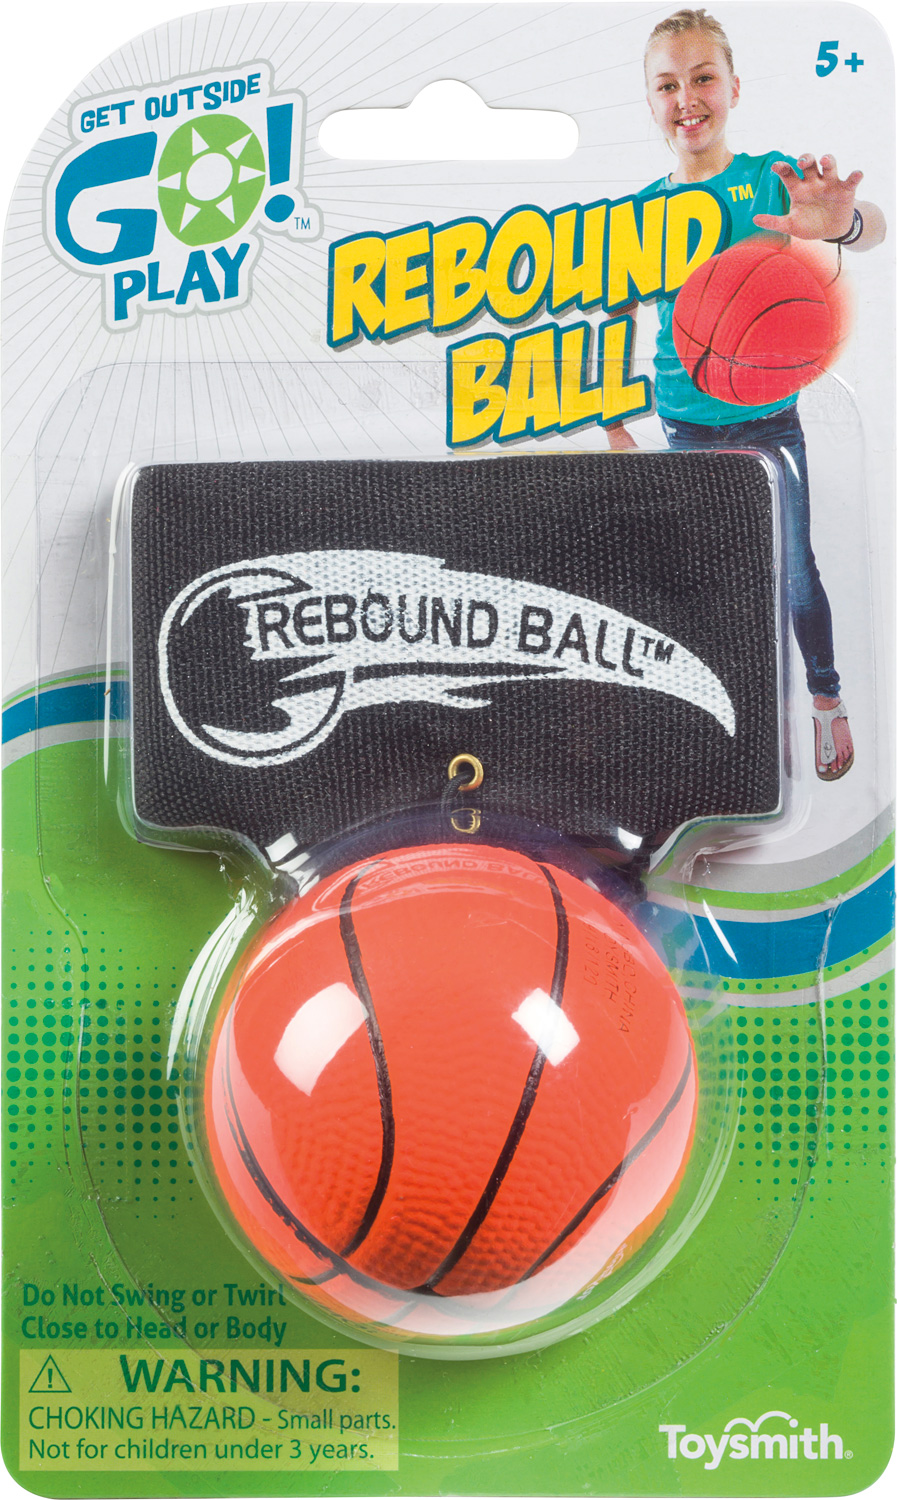 REBOUND BALL – The Children's Gift Shop